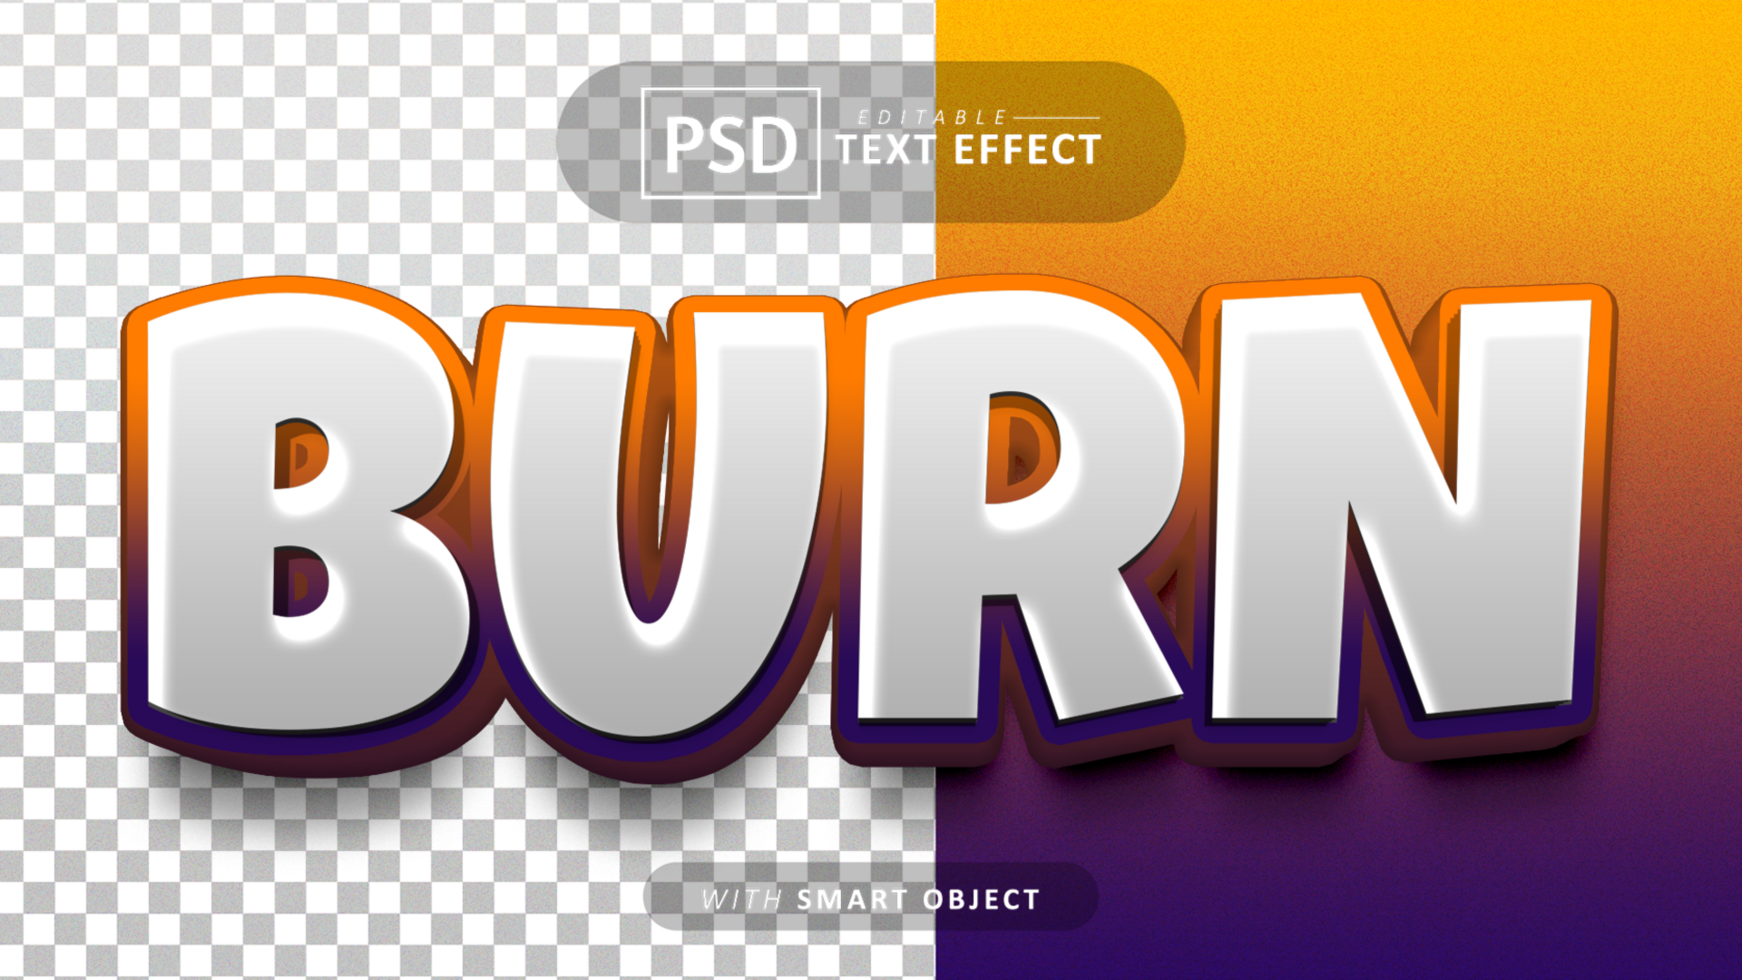 Burn text effect editable psd